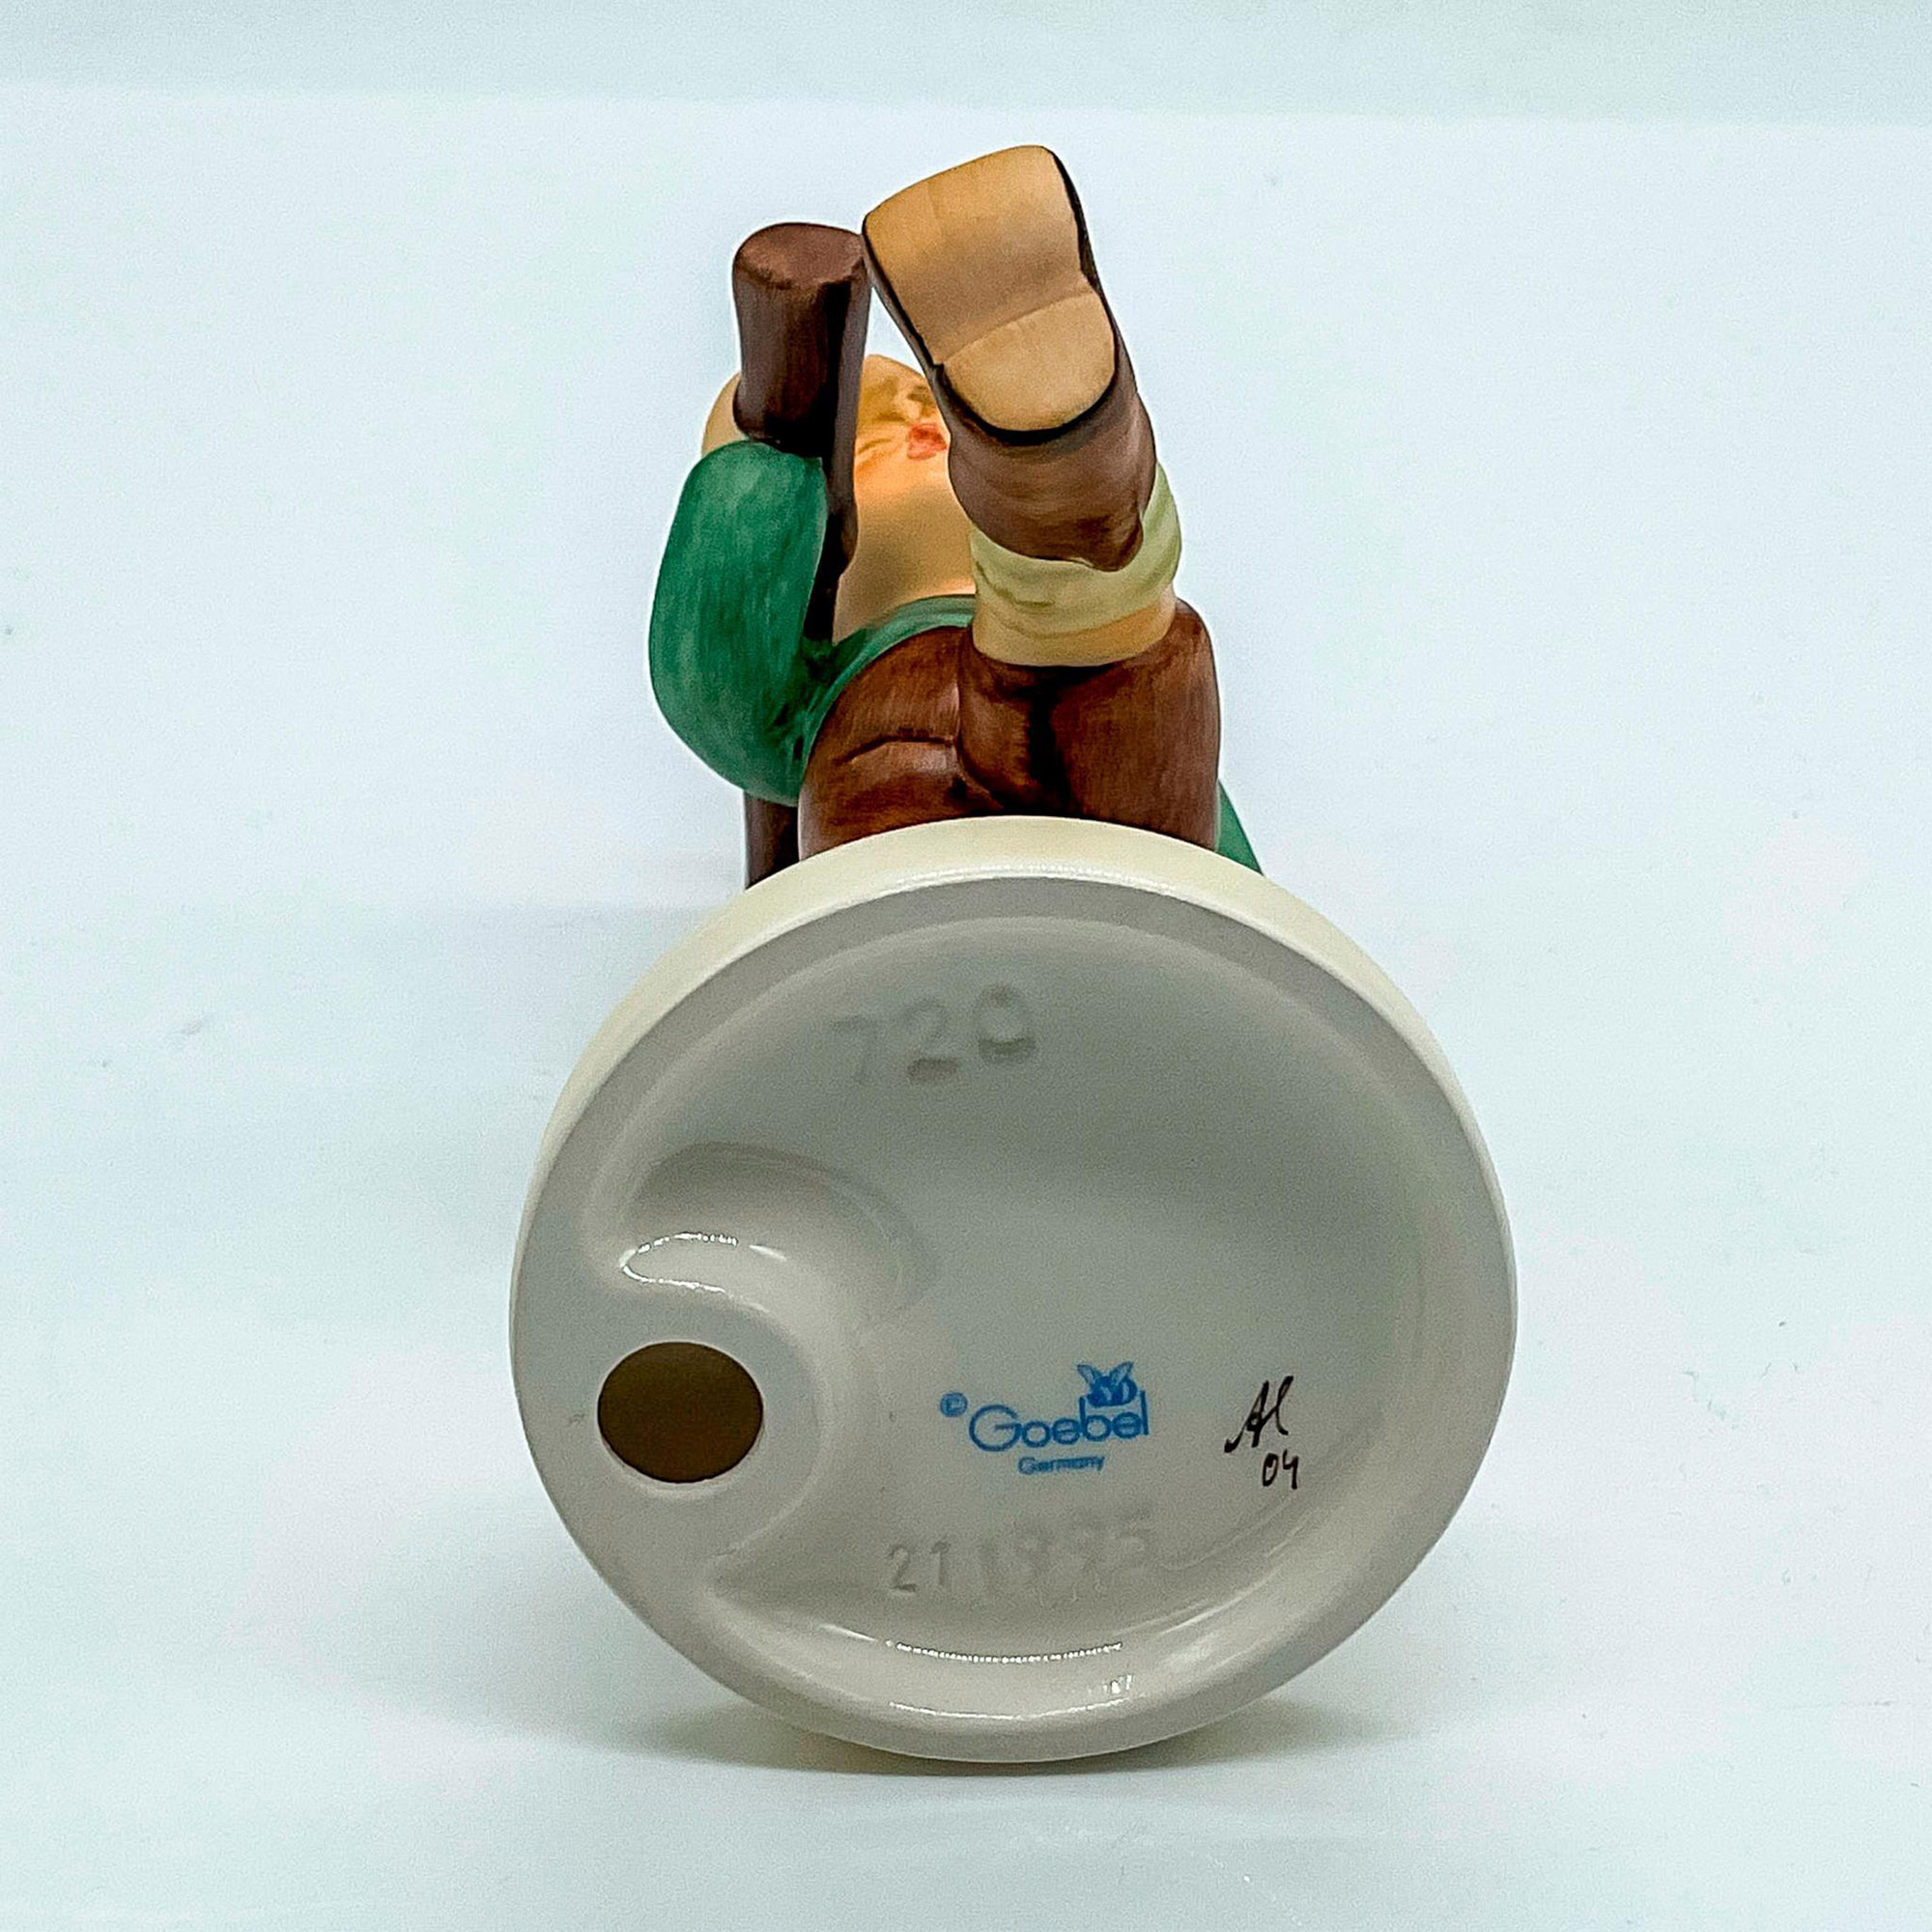 Goebel Hummel Porcelain Figurine, On Parade - Image 3 of 3